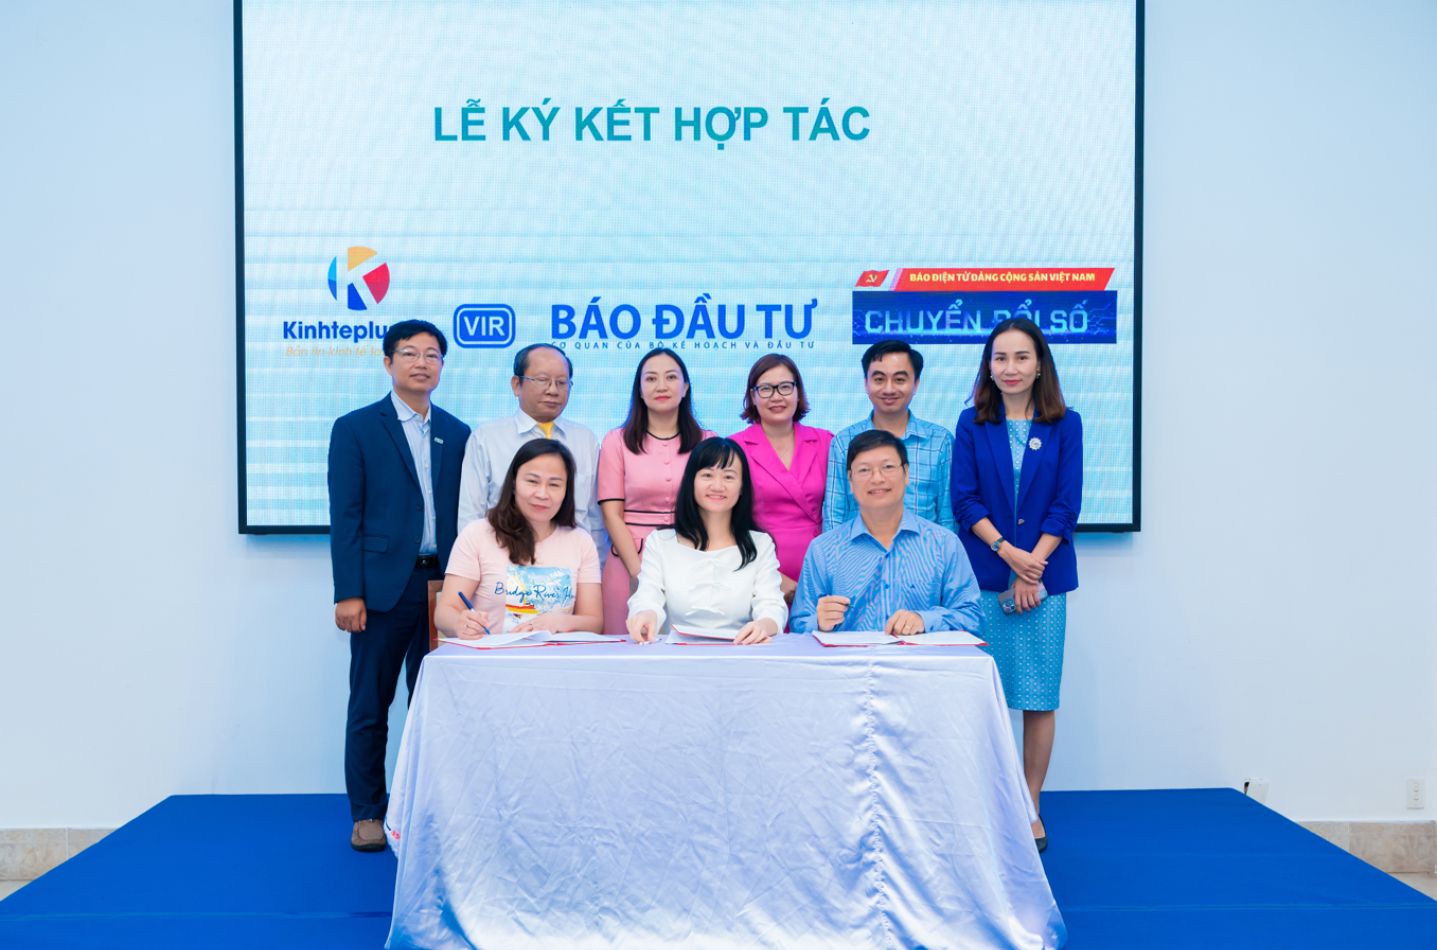 Bà Nguyễn Phương Loan (KinhtePlus), Bà Dươg Tường Nhi và Ông Trần Quý ký kết bảo trợ truyền thông cho cuộc thi